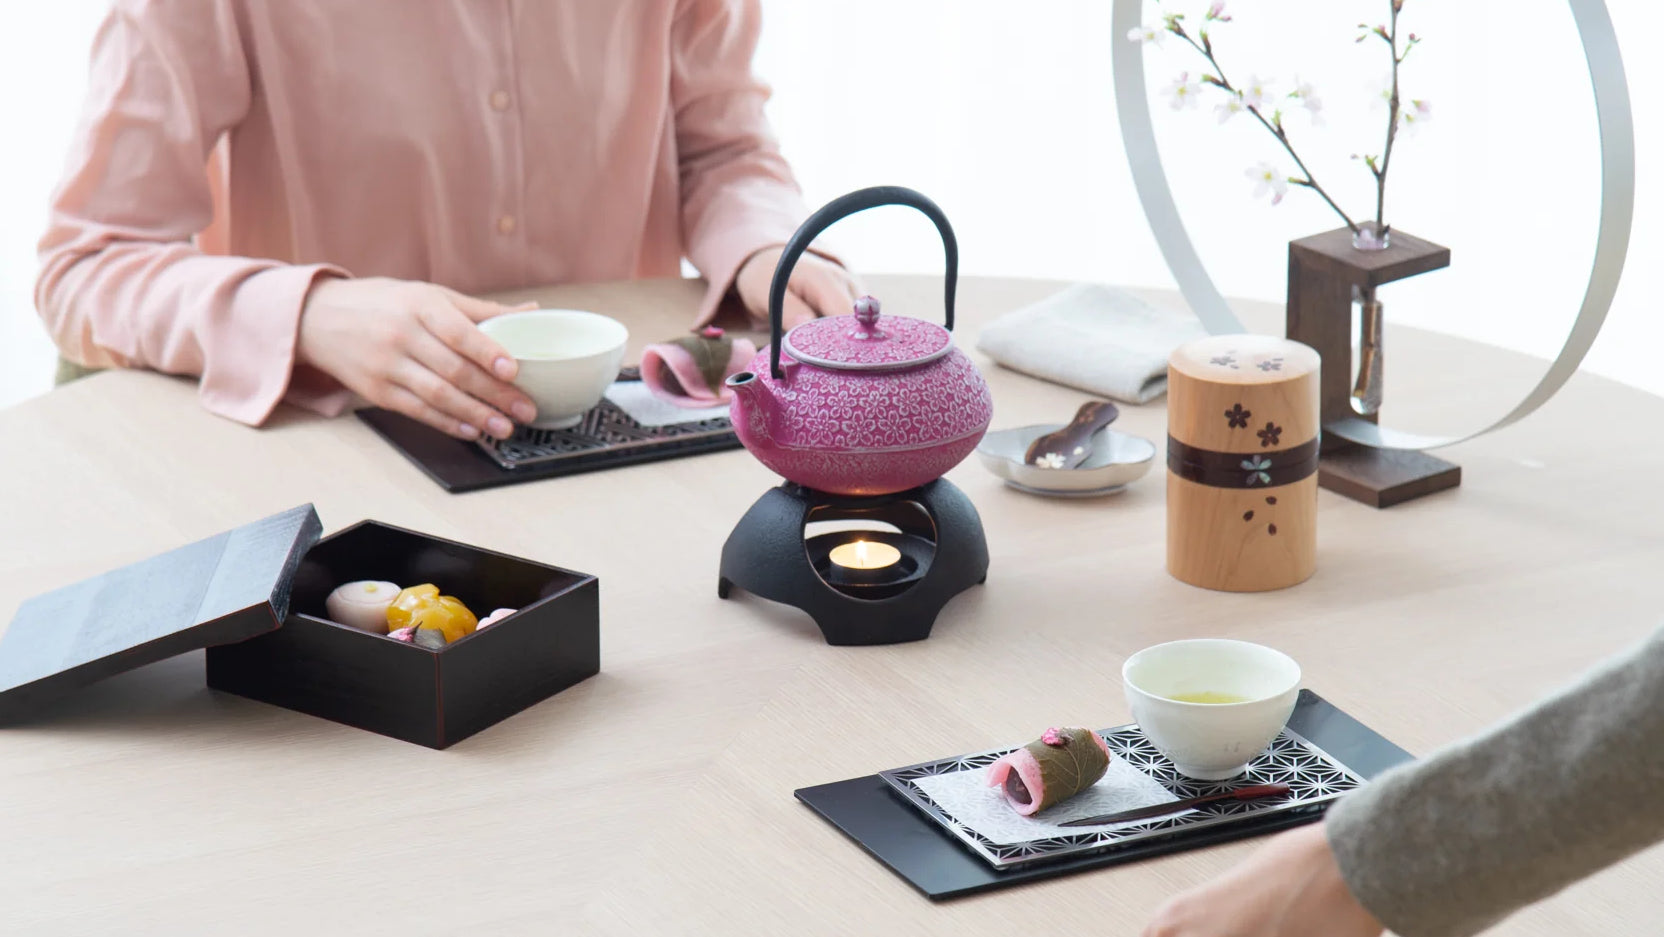 Roji Associates Pink Sakura Nambu Ironware Cast Iron Teapot, MUSUBI KILN